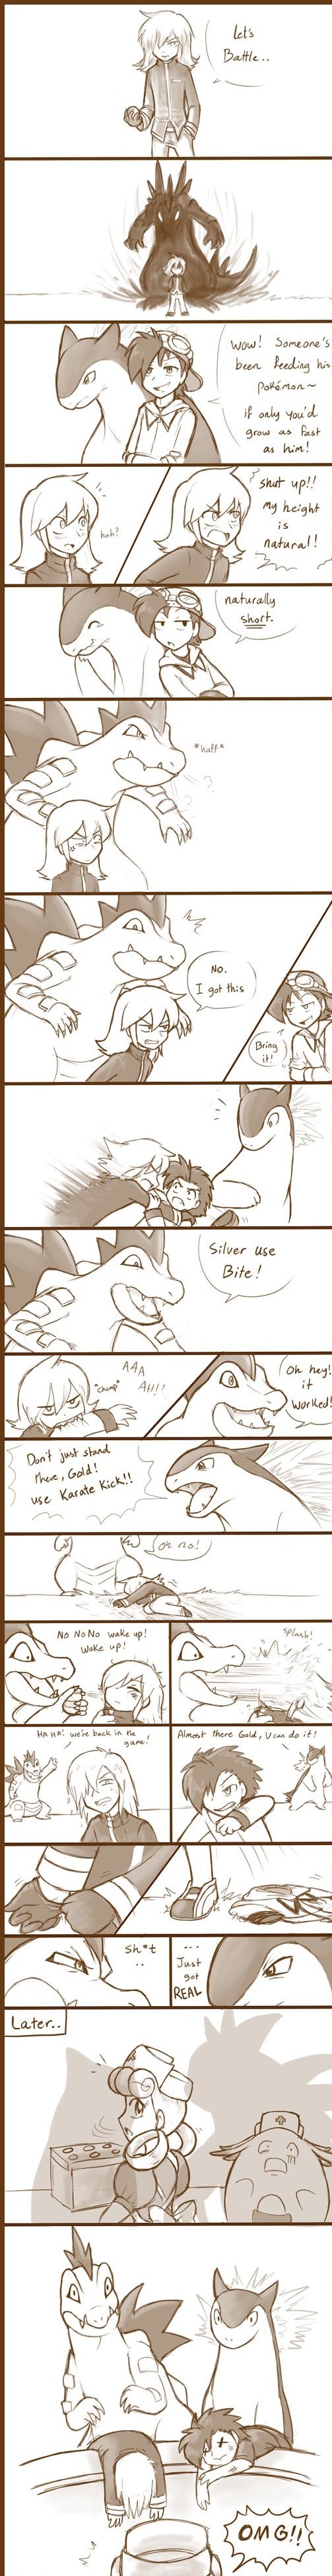 Pokemon: Gold vs Silver